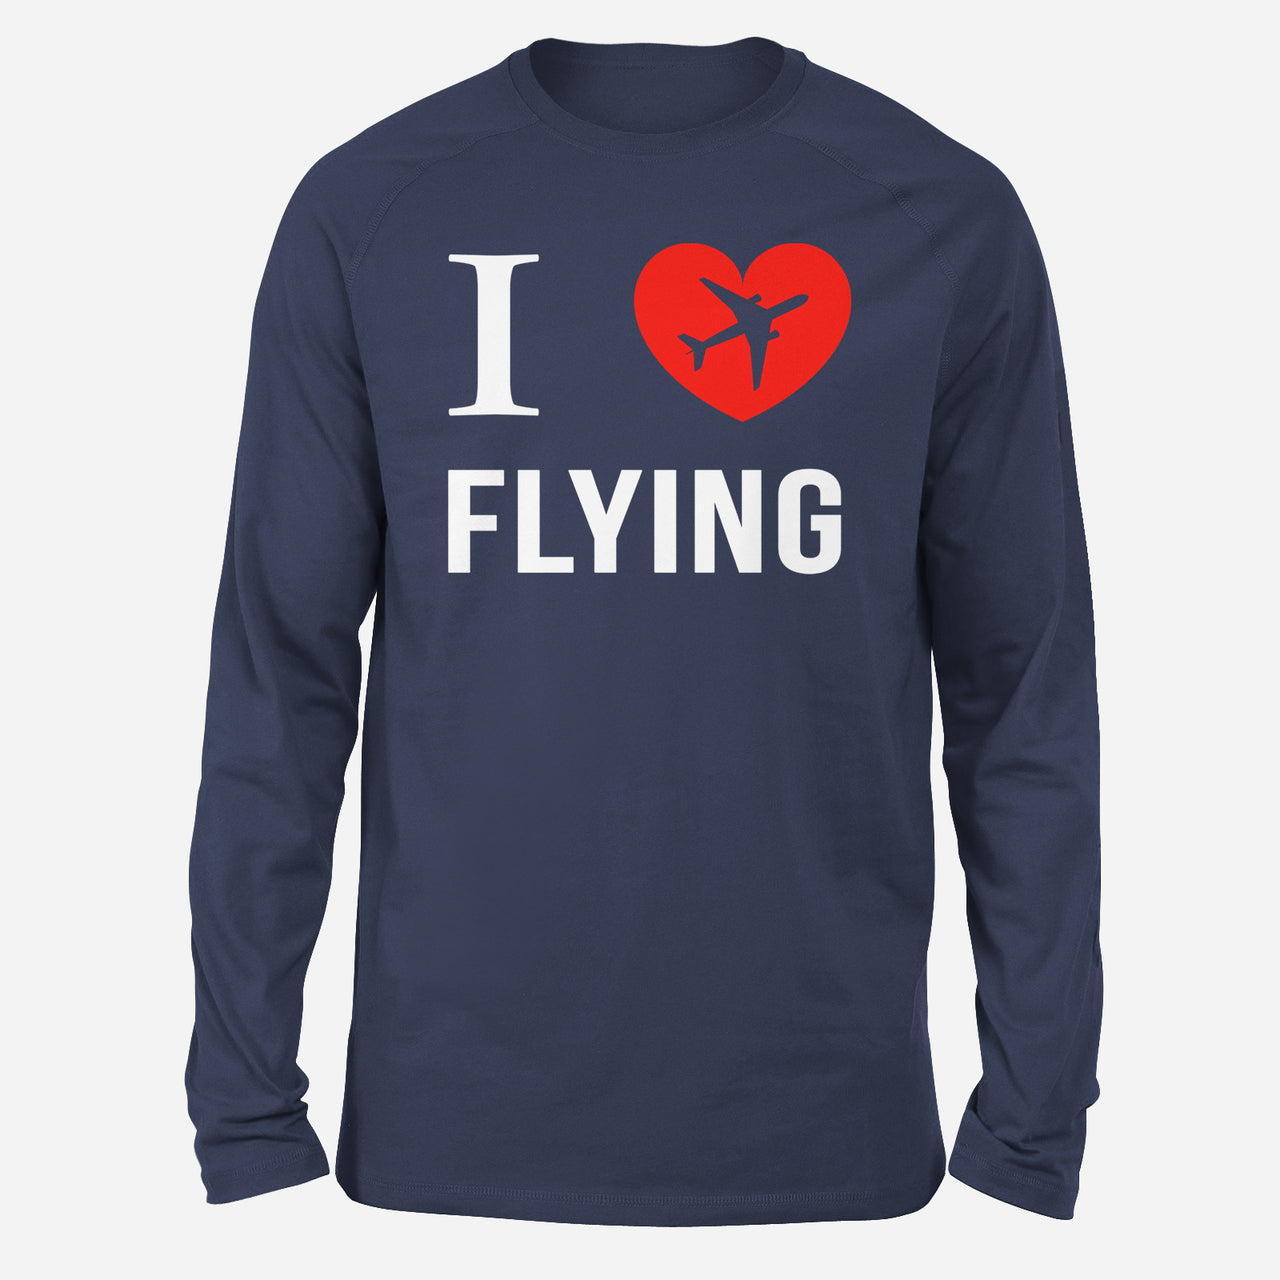 I Love Flying Designed Long-Sleeve T-Shirts